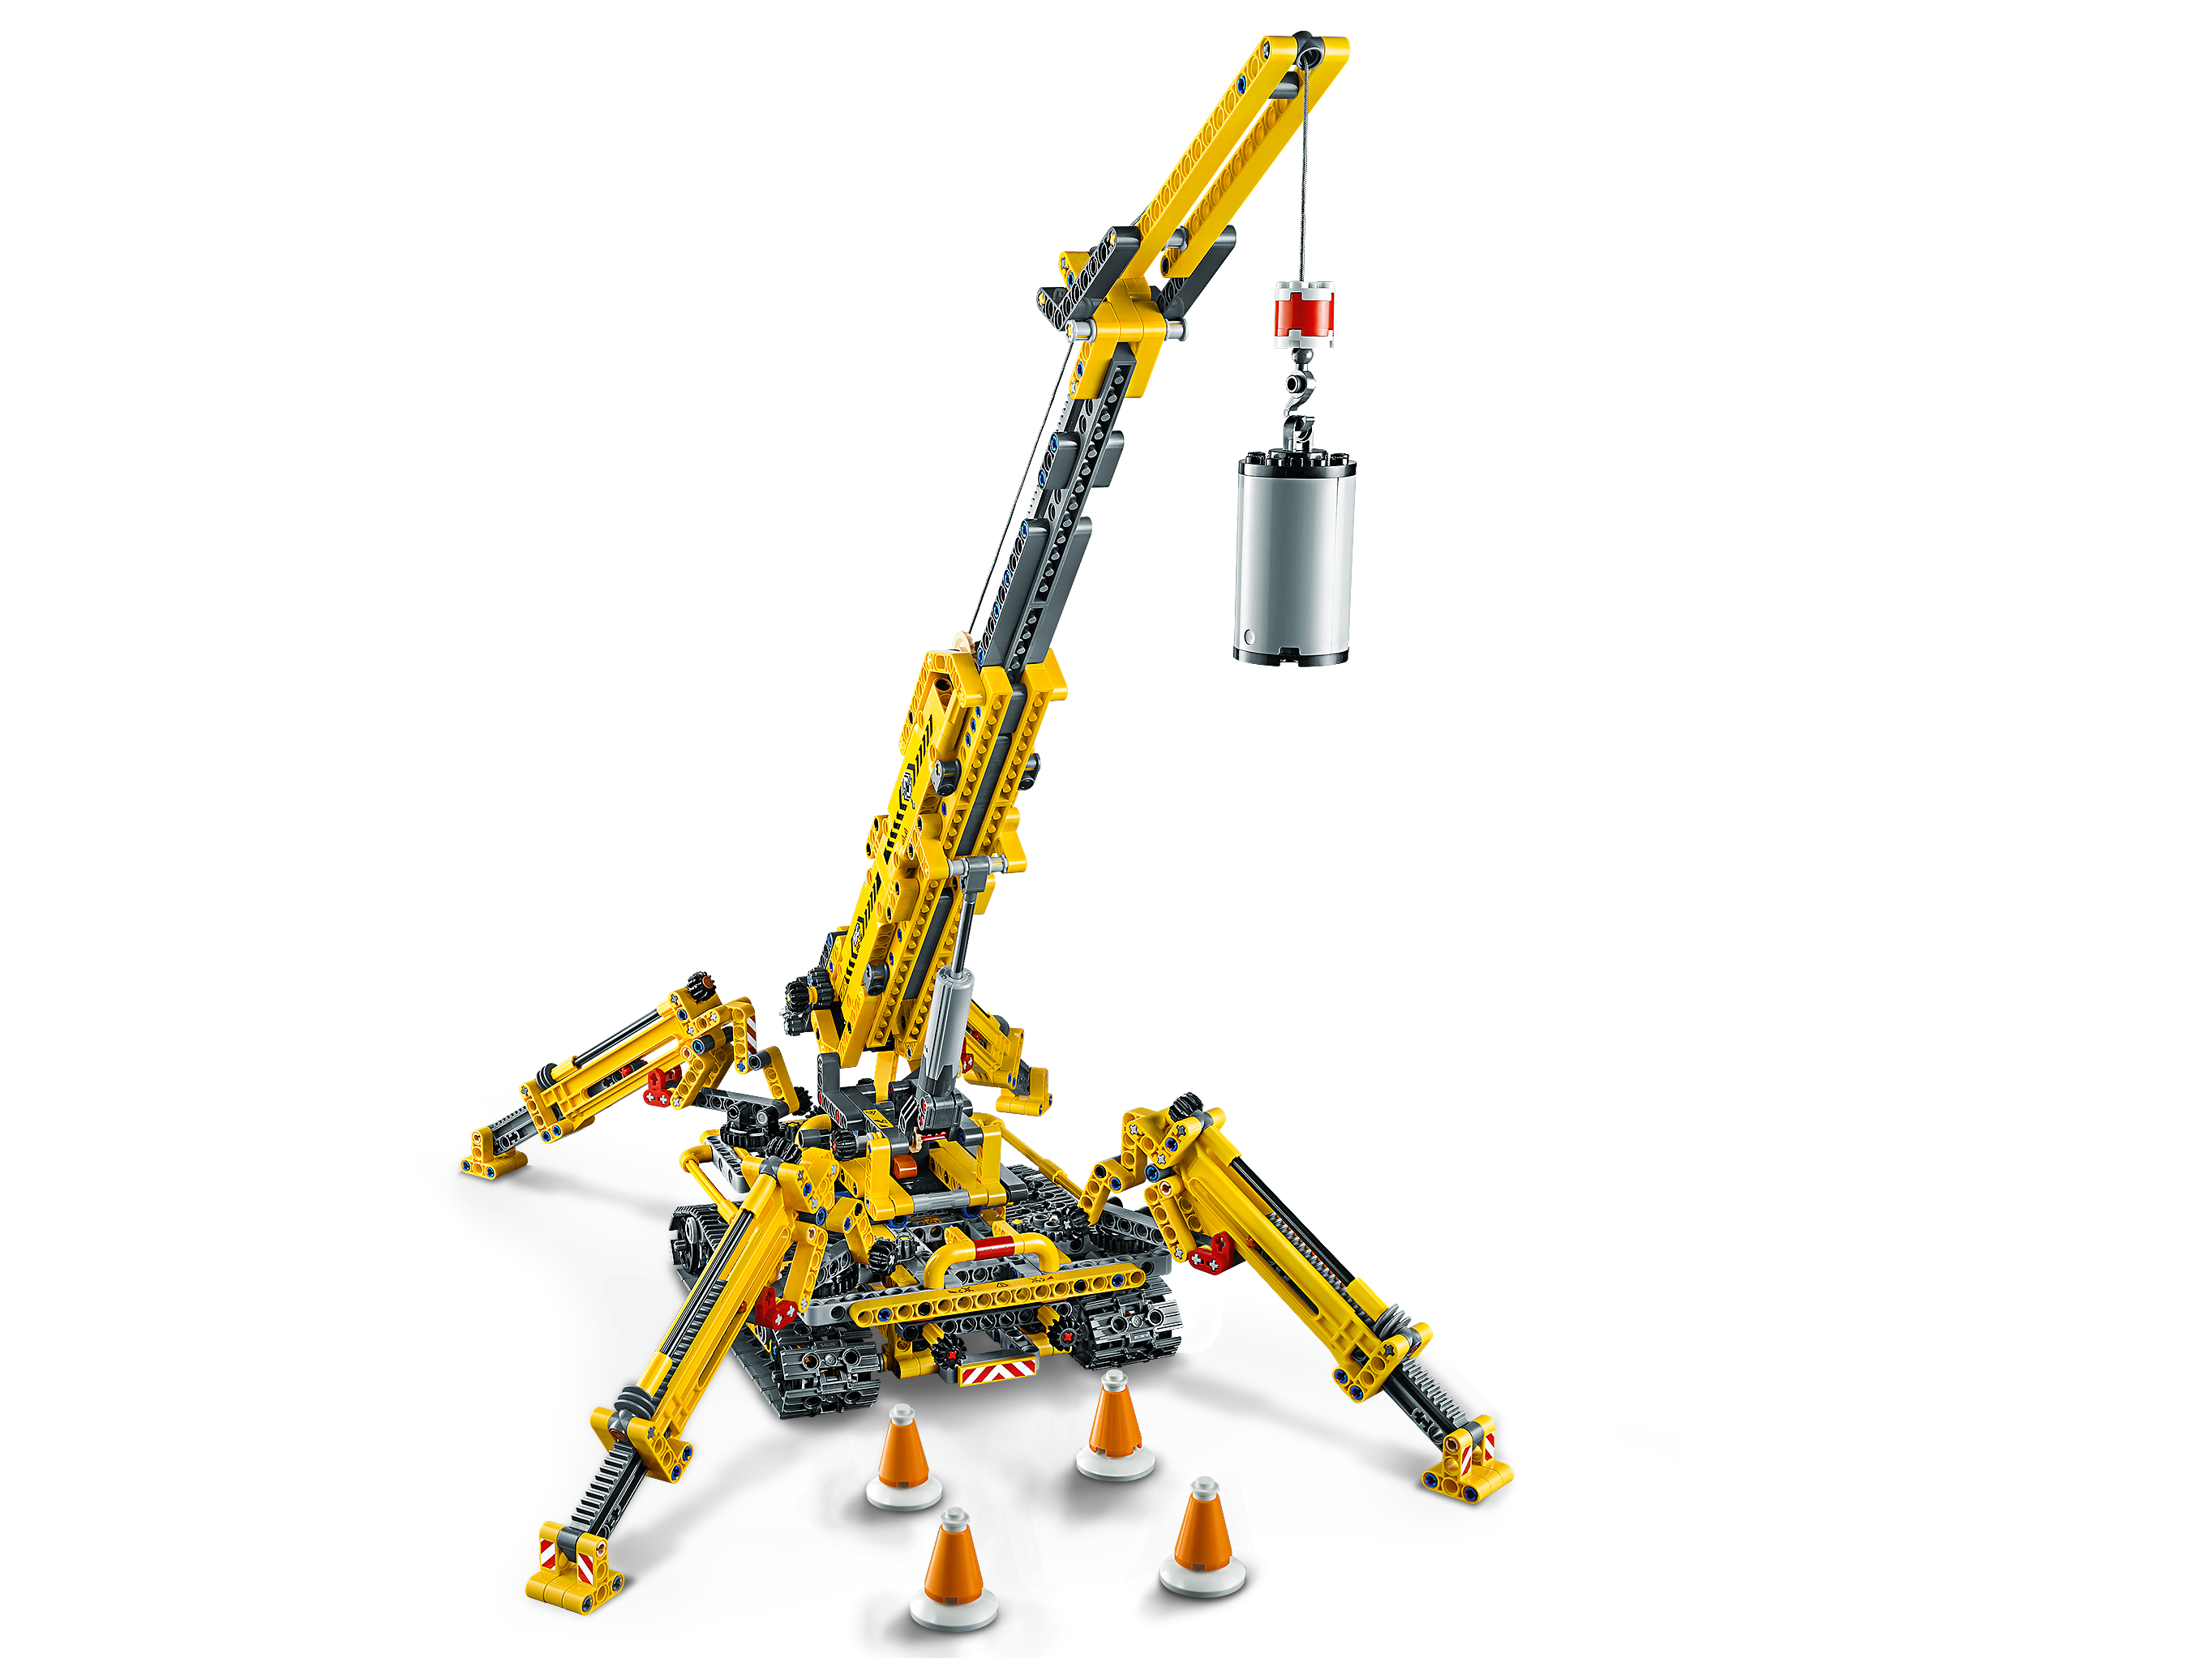 LEGO 42097 GRU CINGOLATA COMPATTA TECHNIC AGO 2019 